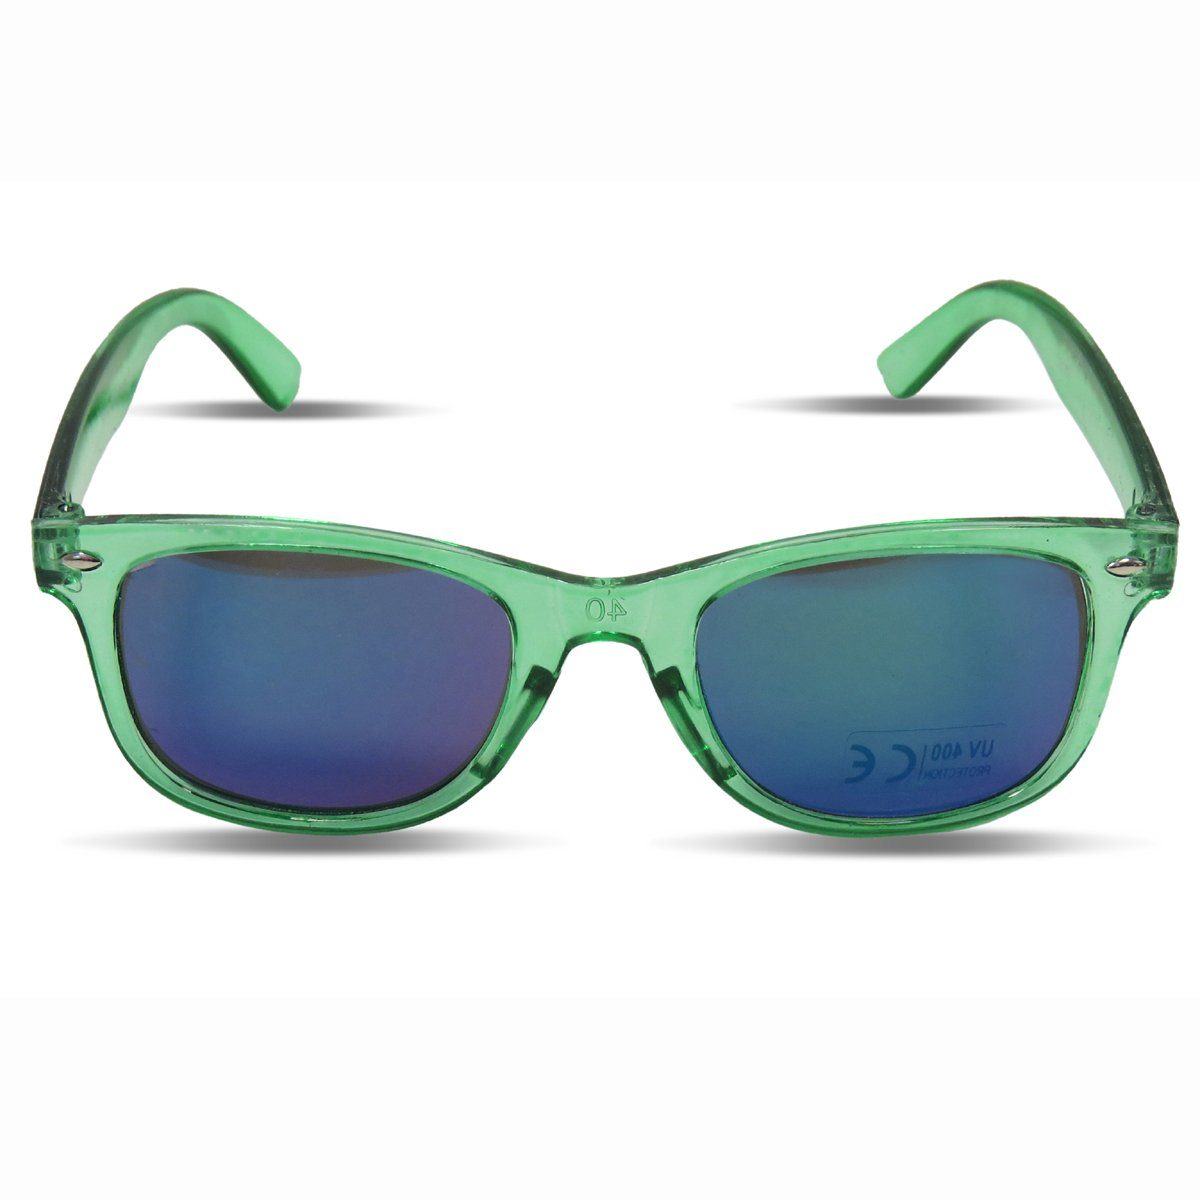 Sonia Originelli Sonnenbrille Kinder Sonnenbrille "Kids Style" Verspiegelt Brille Transparent Onesize